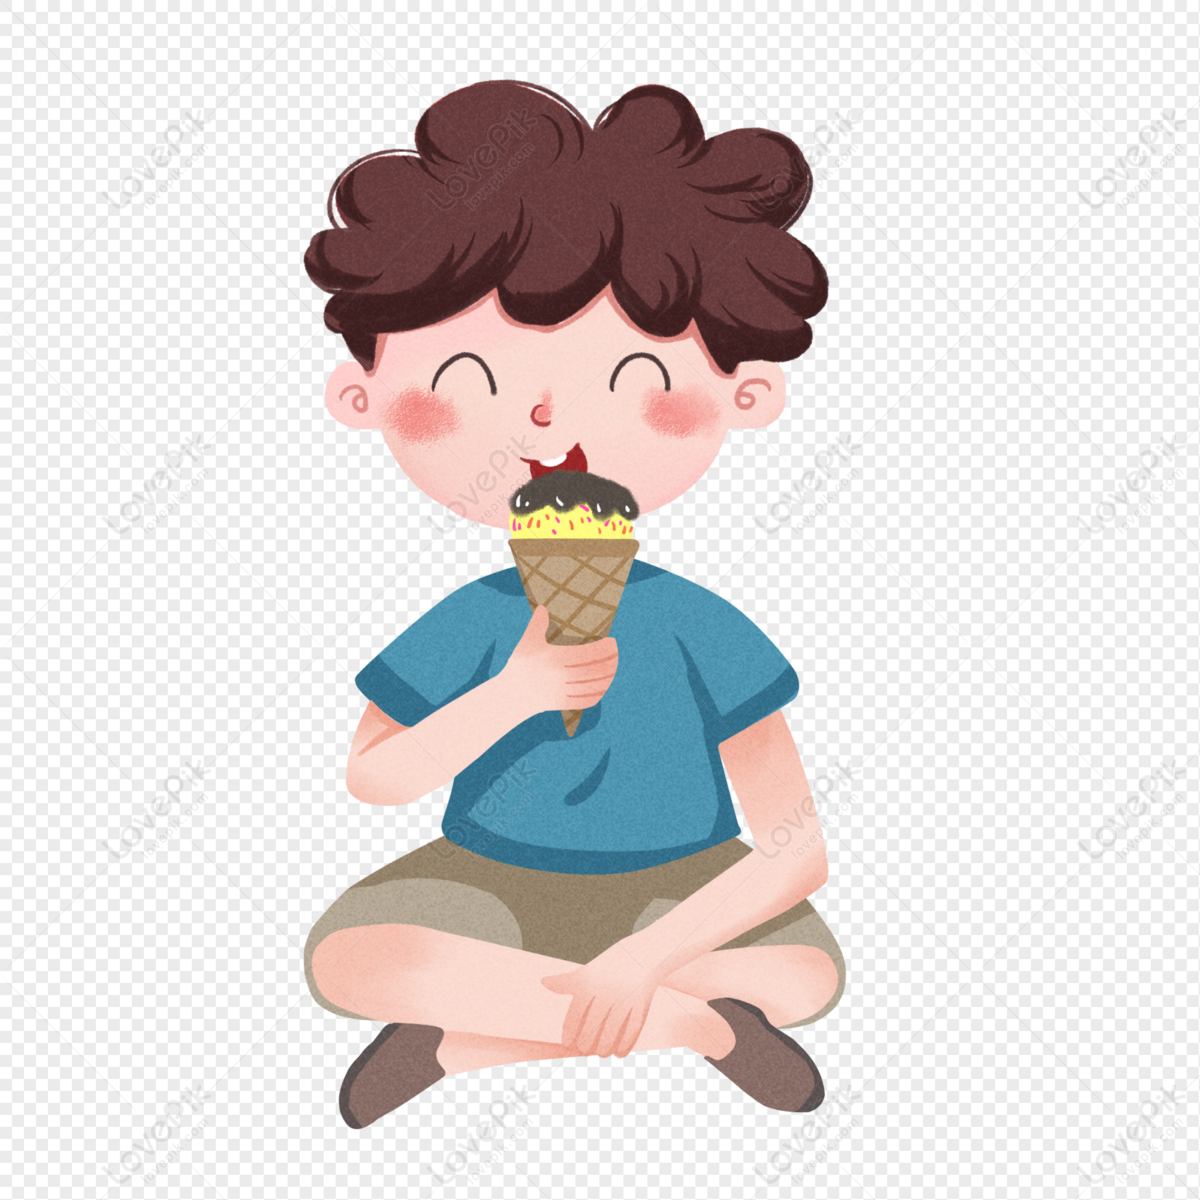 吃雪糕的小女孩AI圖案素材免費下載 - 尺寸3594 × 4947px - 圖形ID401751301 - Lovepik